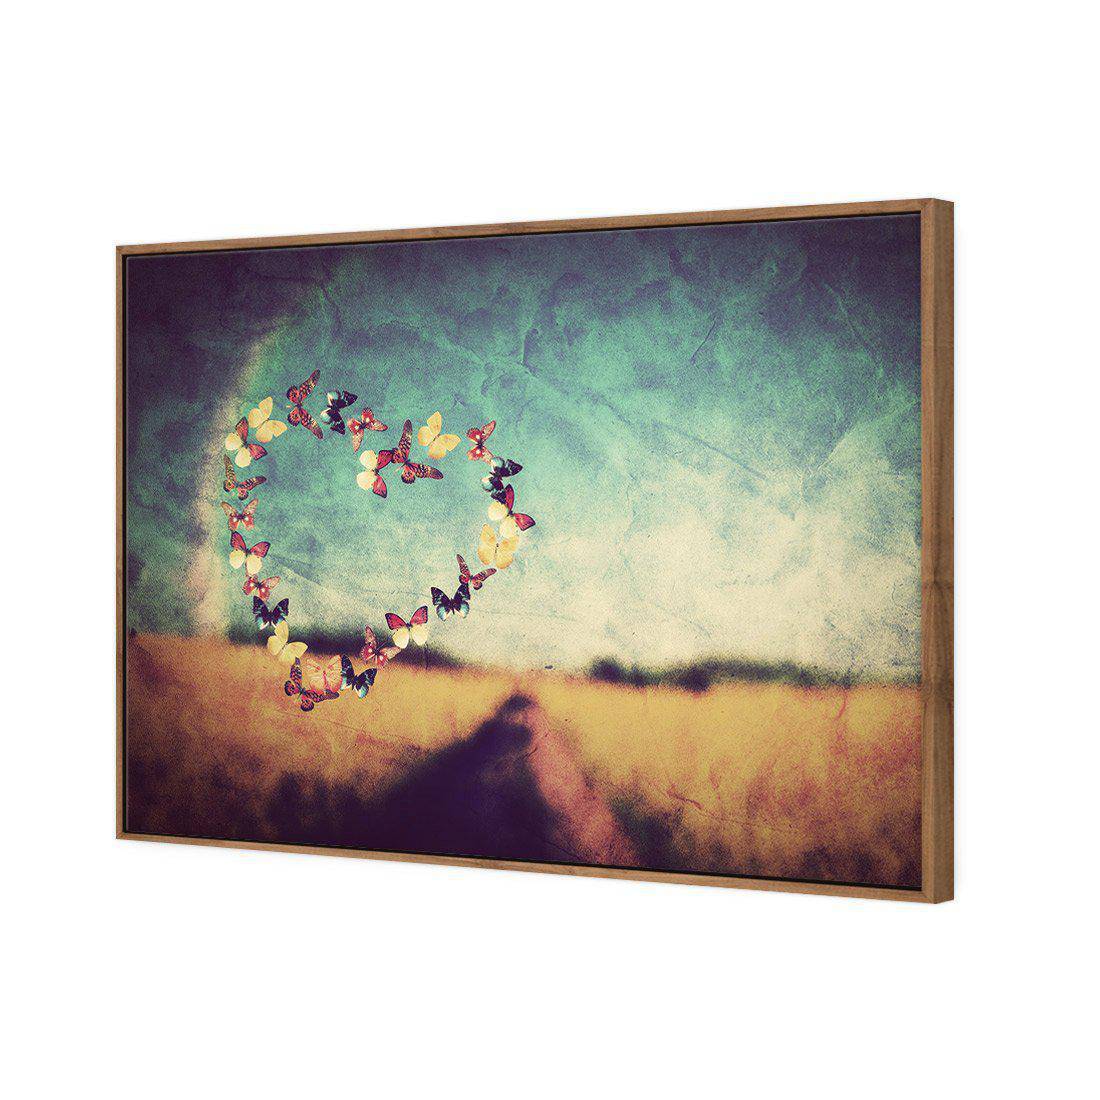 Heart Of Butterflies Canvas Art-Canvas-Wall Art Designs-45x30cm-Canvas - Natural Frame-Wall Art Designs